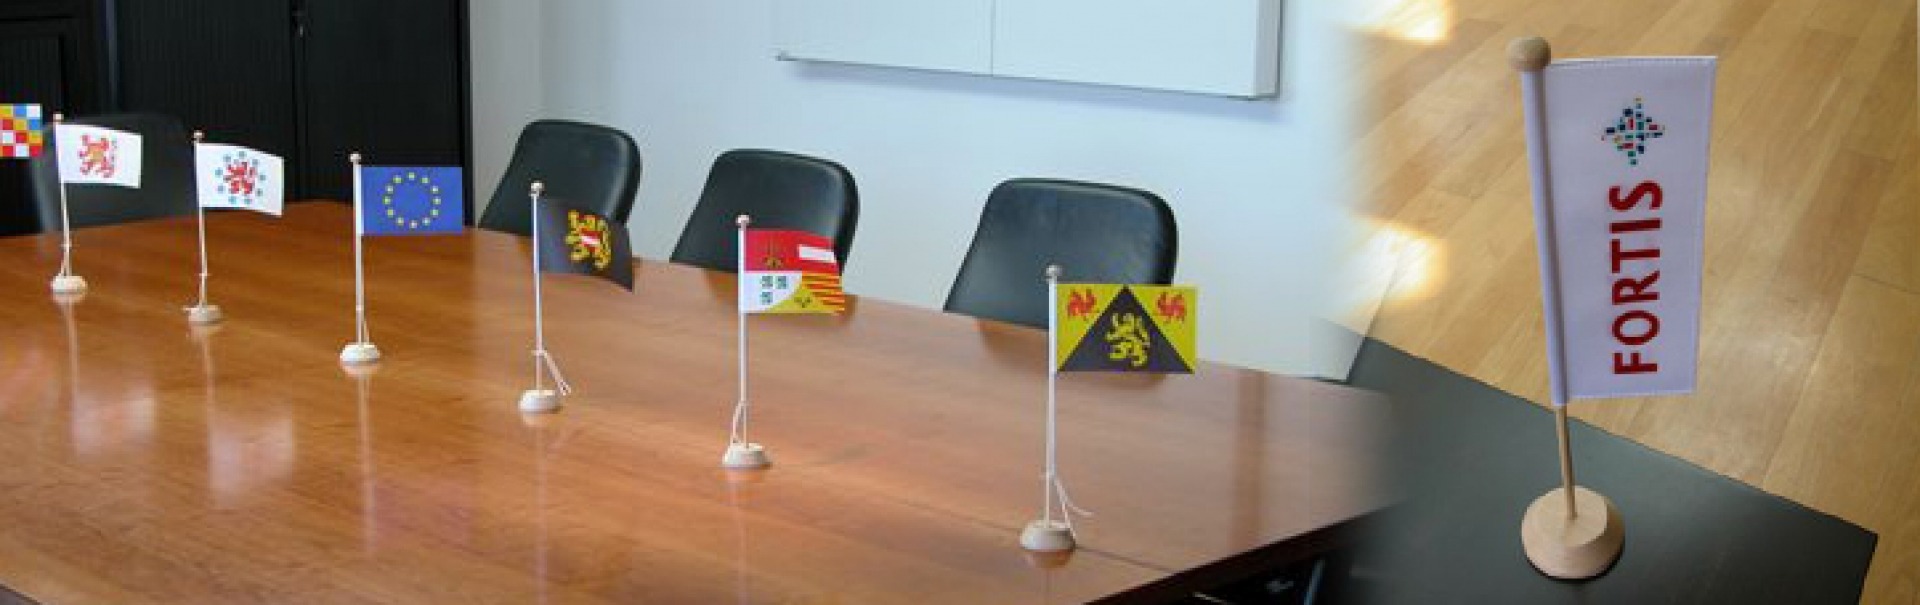 Table flags meetingroom